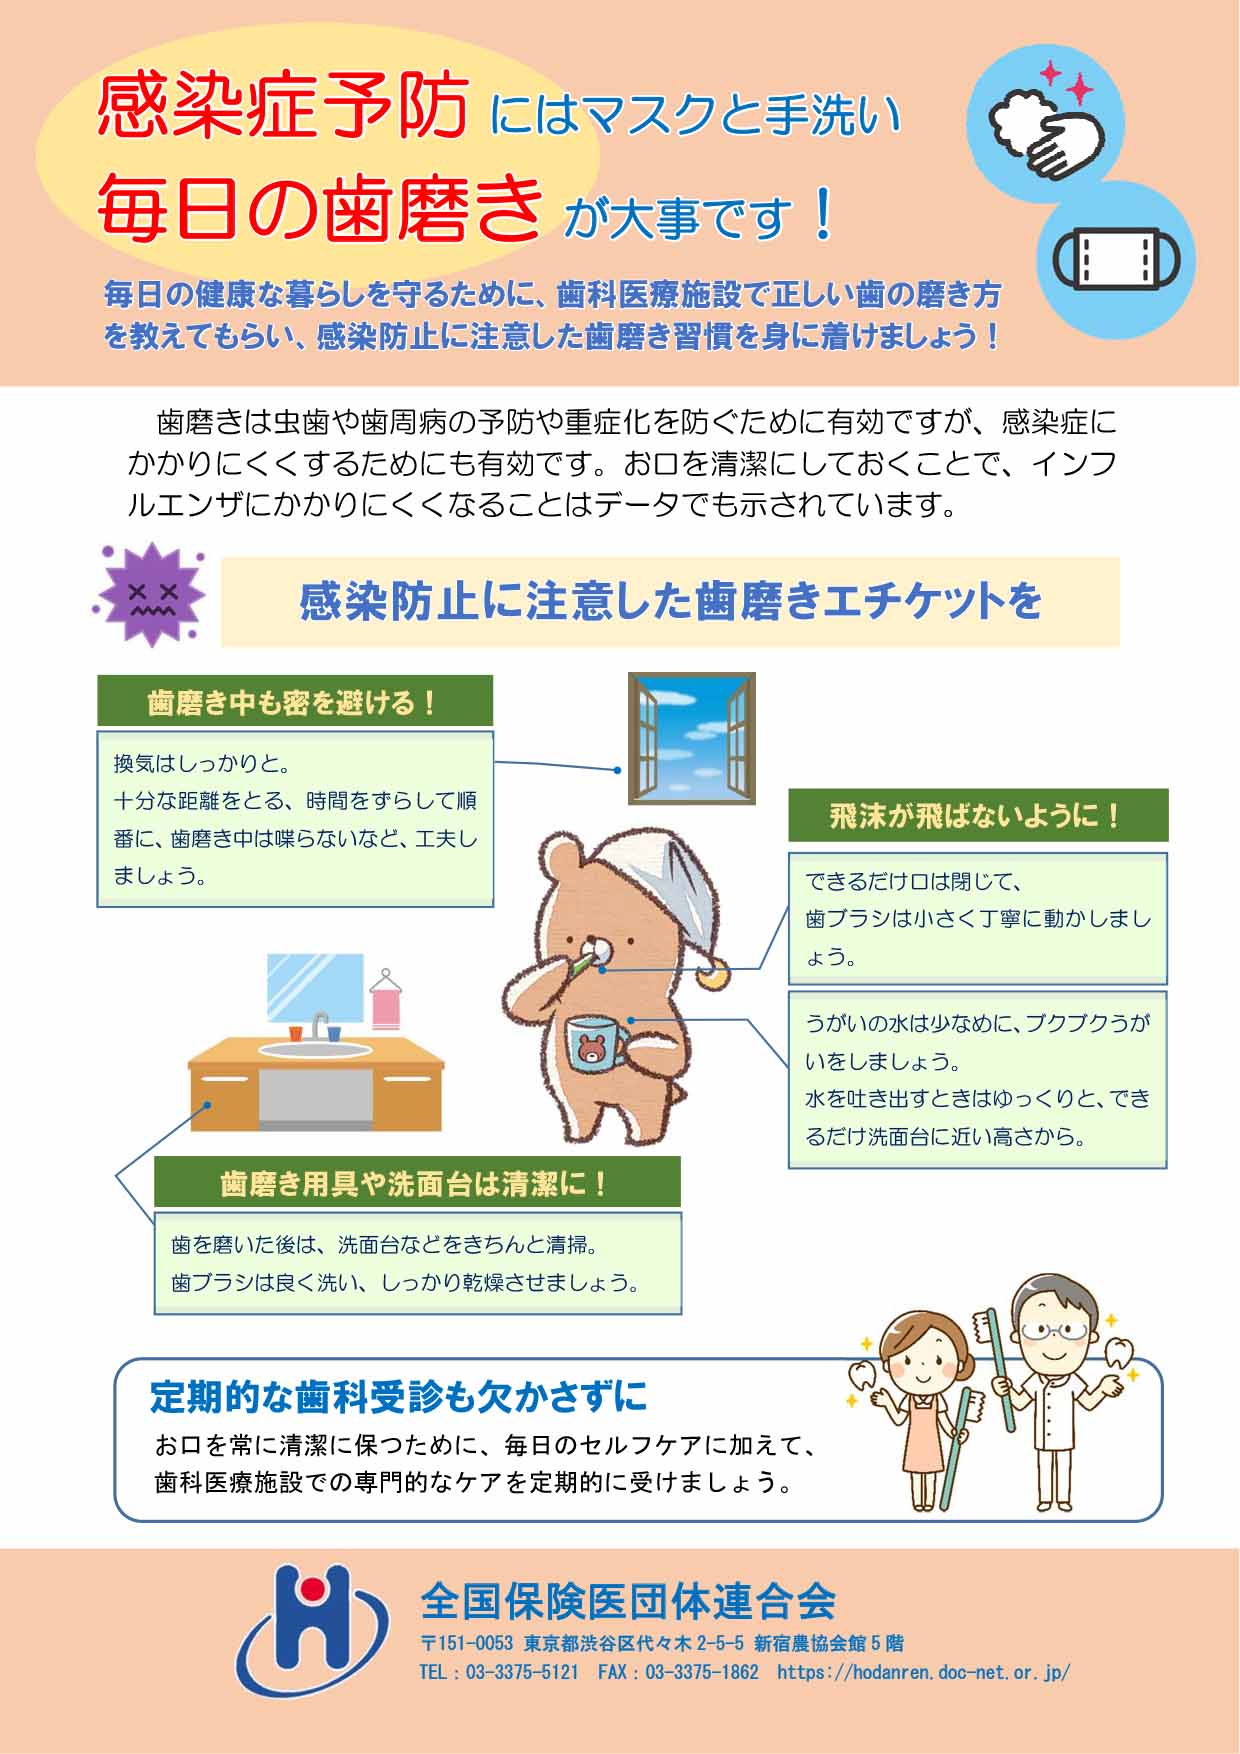 歯磨きについての患者啓蒙 ポスター活用のご案内 長崎県保険医協会